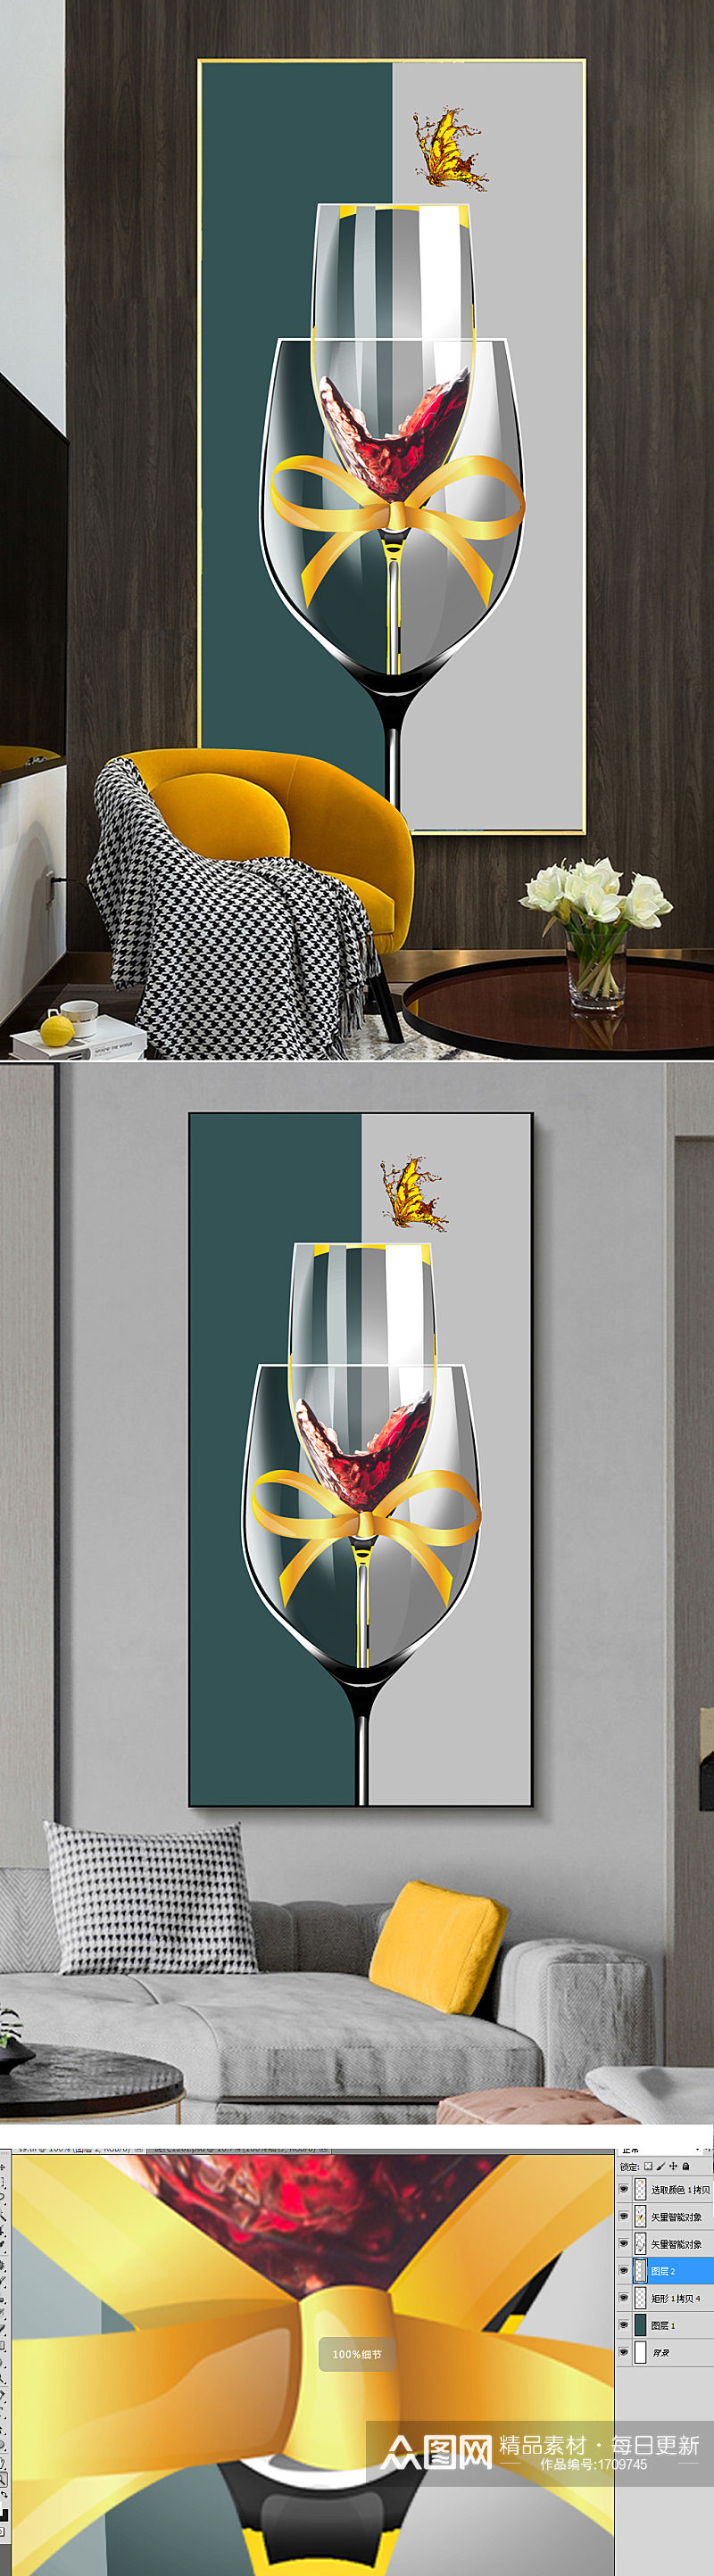 现代简约抽象轻奢金色酒杯餐厅装饰画素材